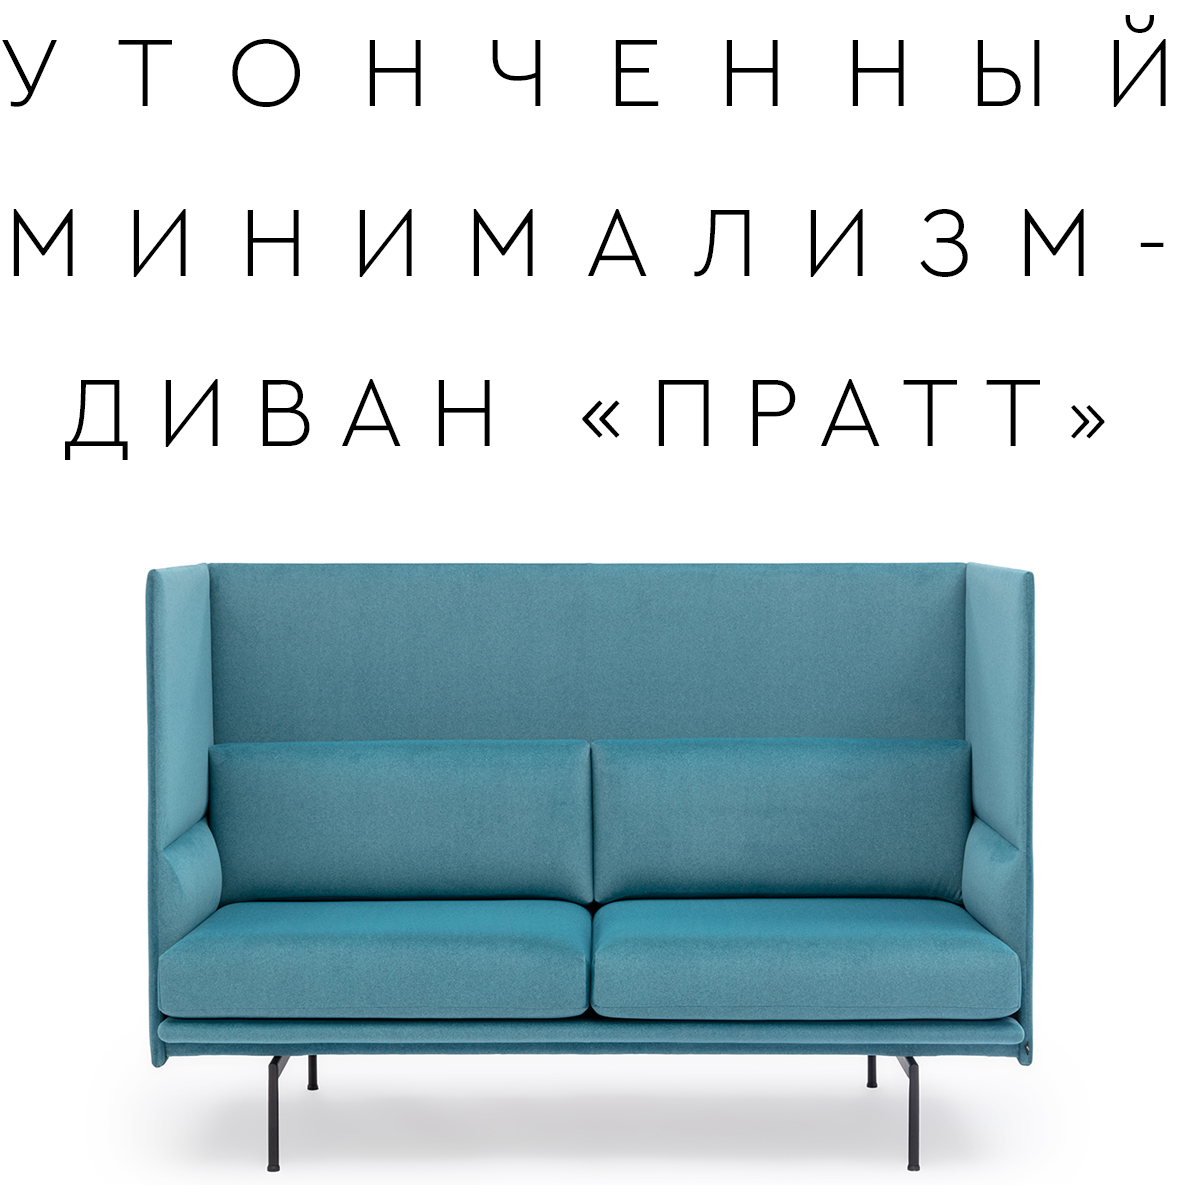 Новая модель дивана «ПРАТТ»